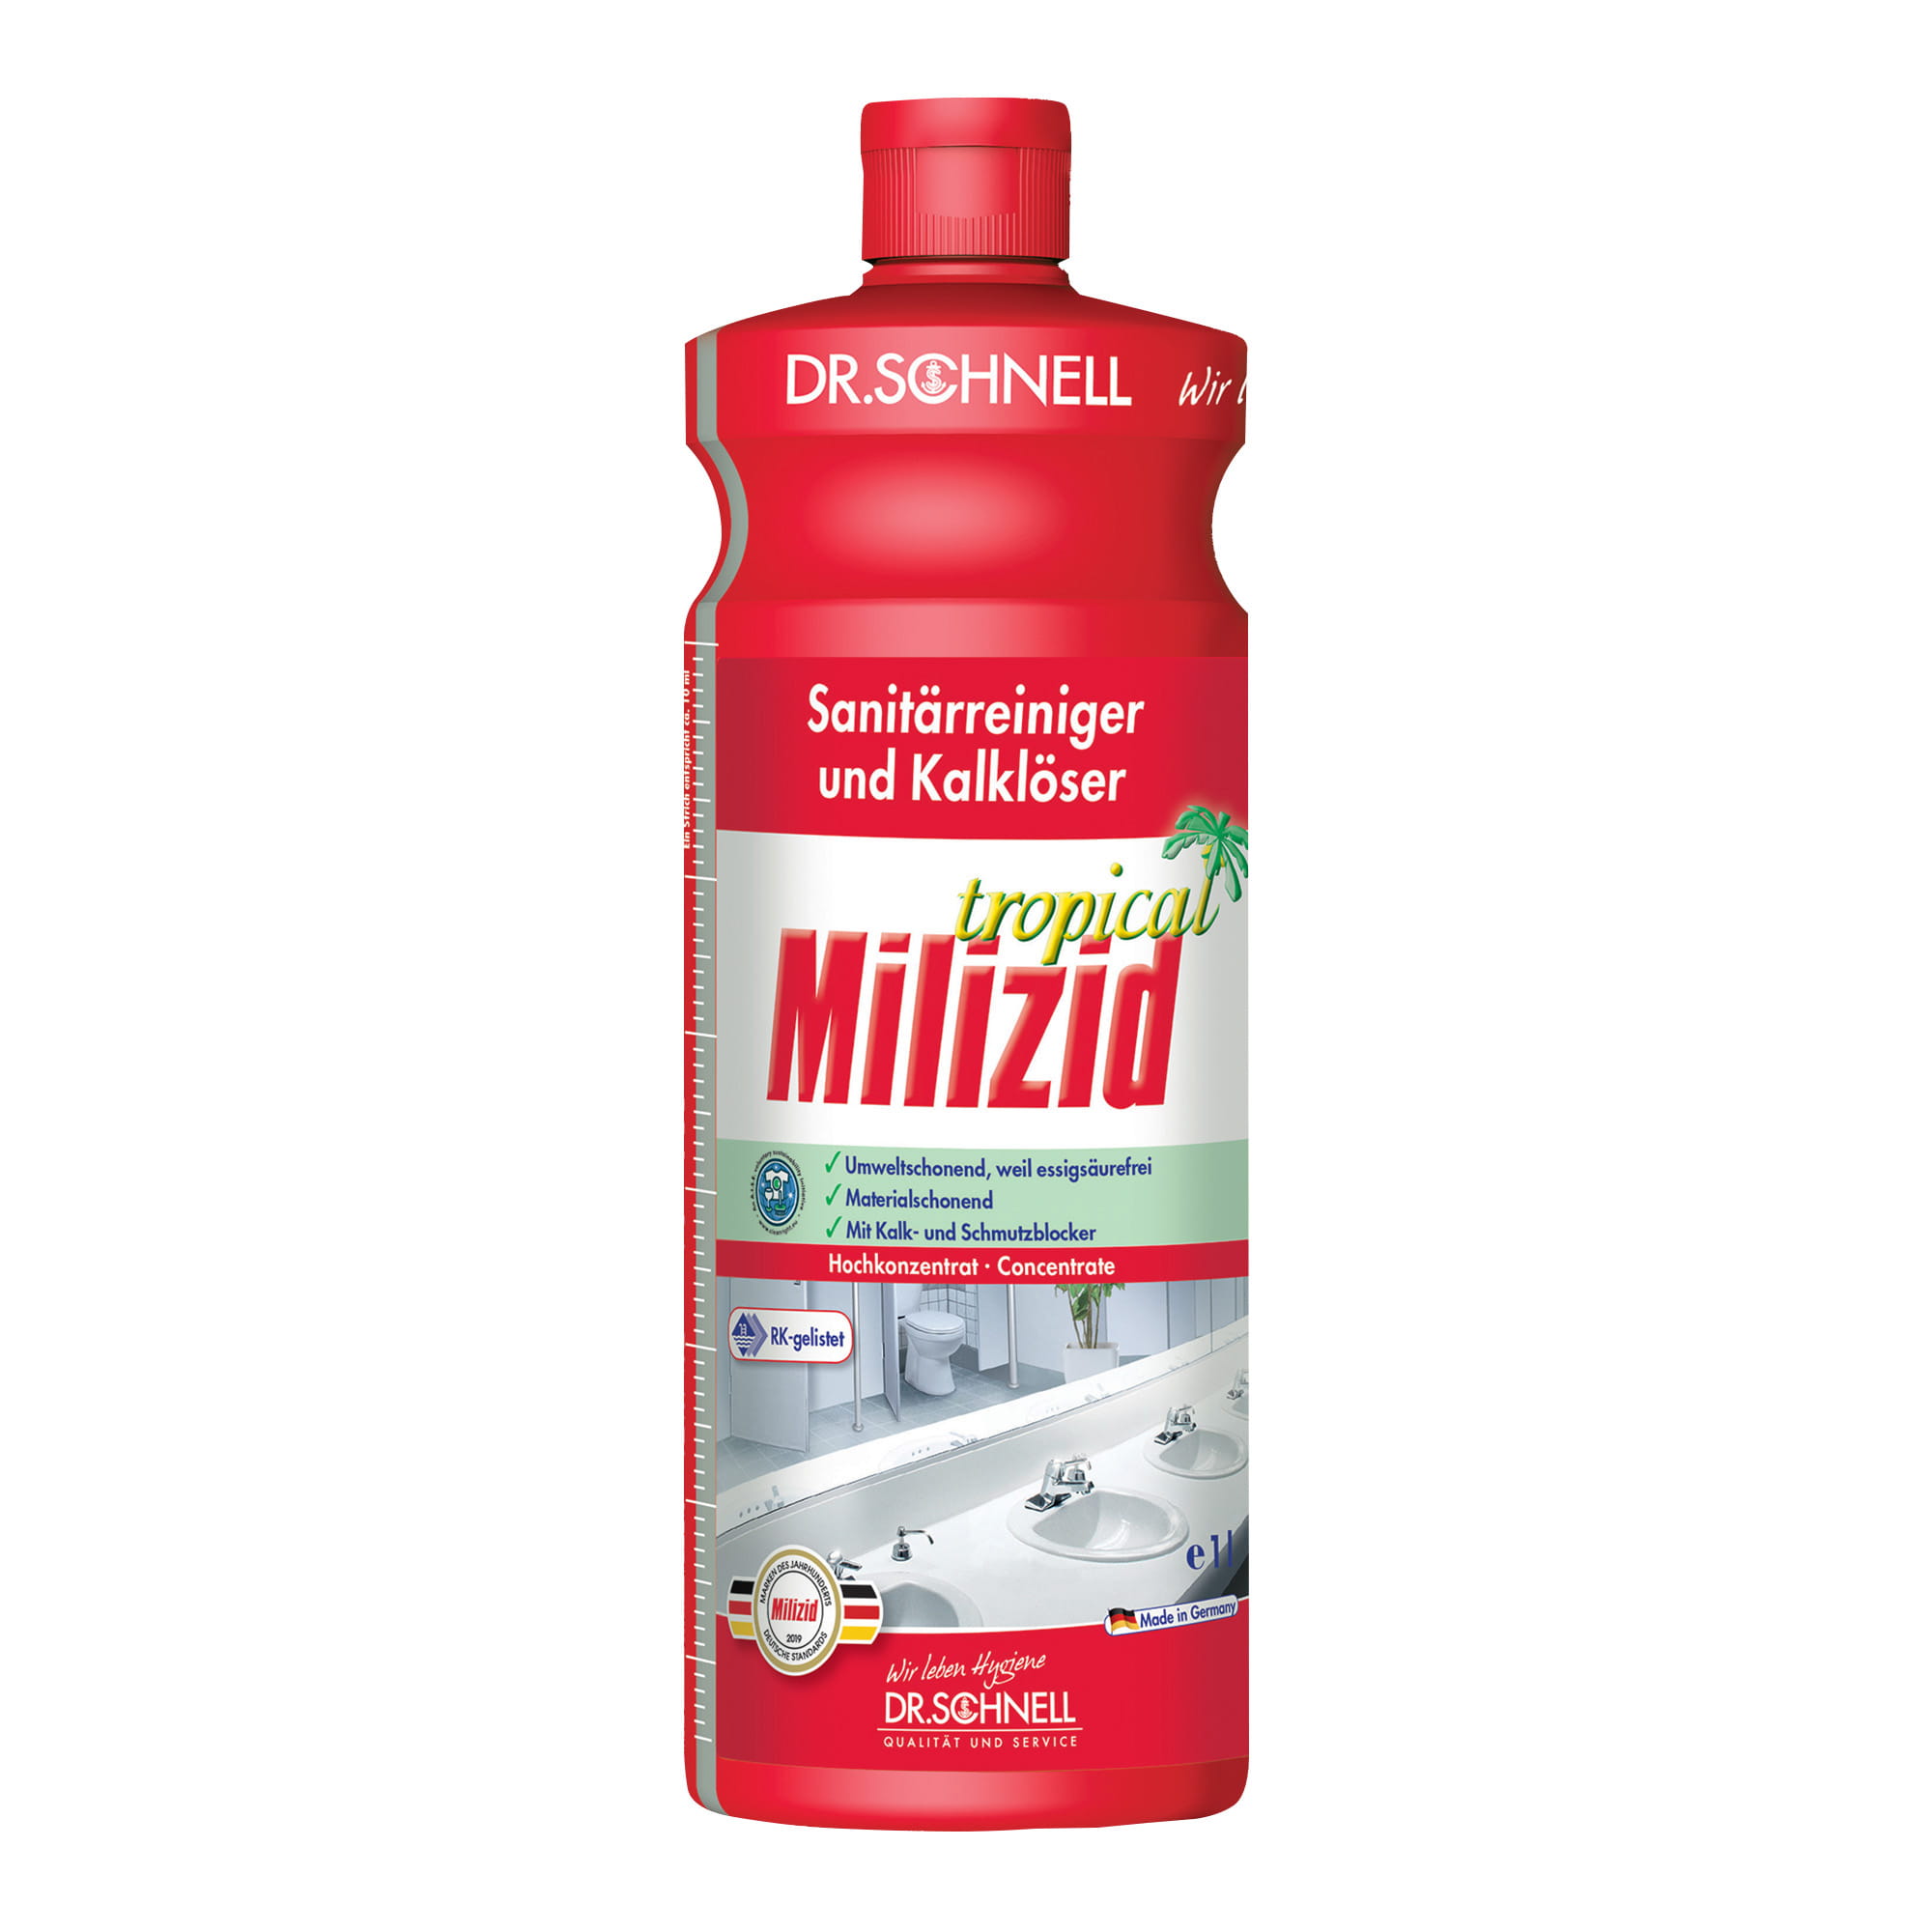 Dr. Schnell Milizid Tropical Sanitärreiniger 1 Liter Flasche 00204_1